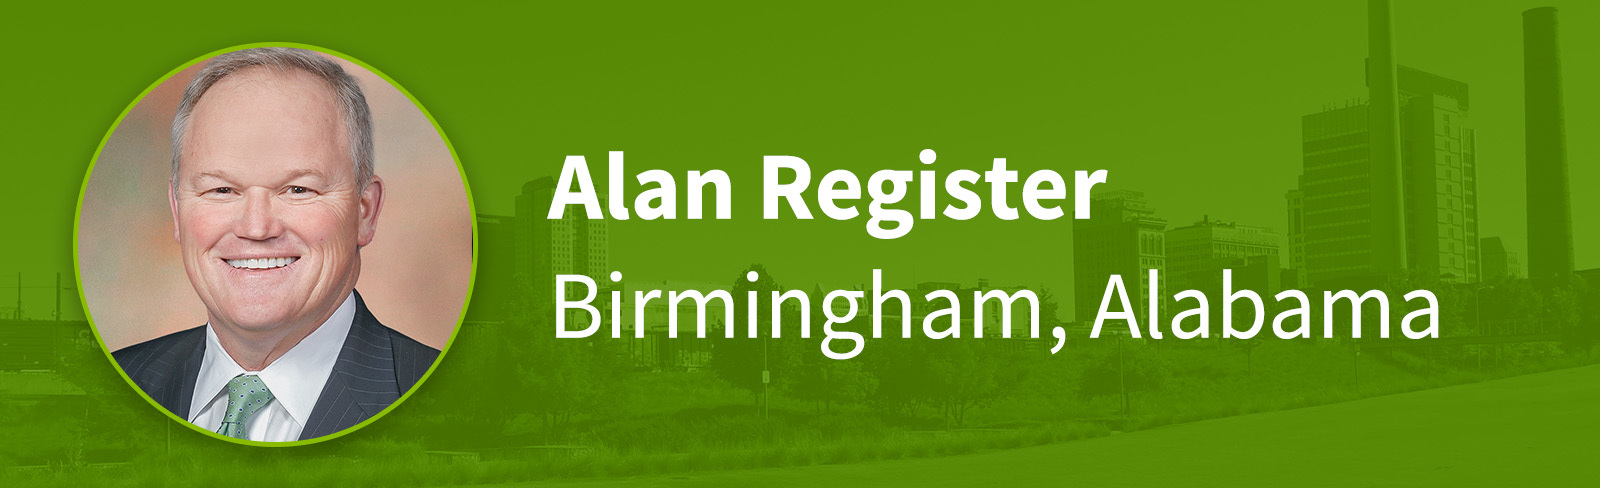 Alan Register